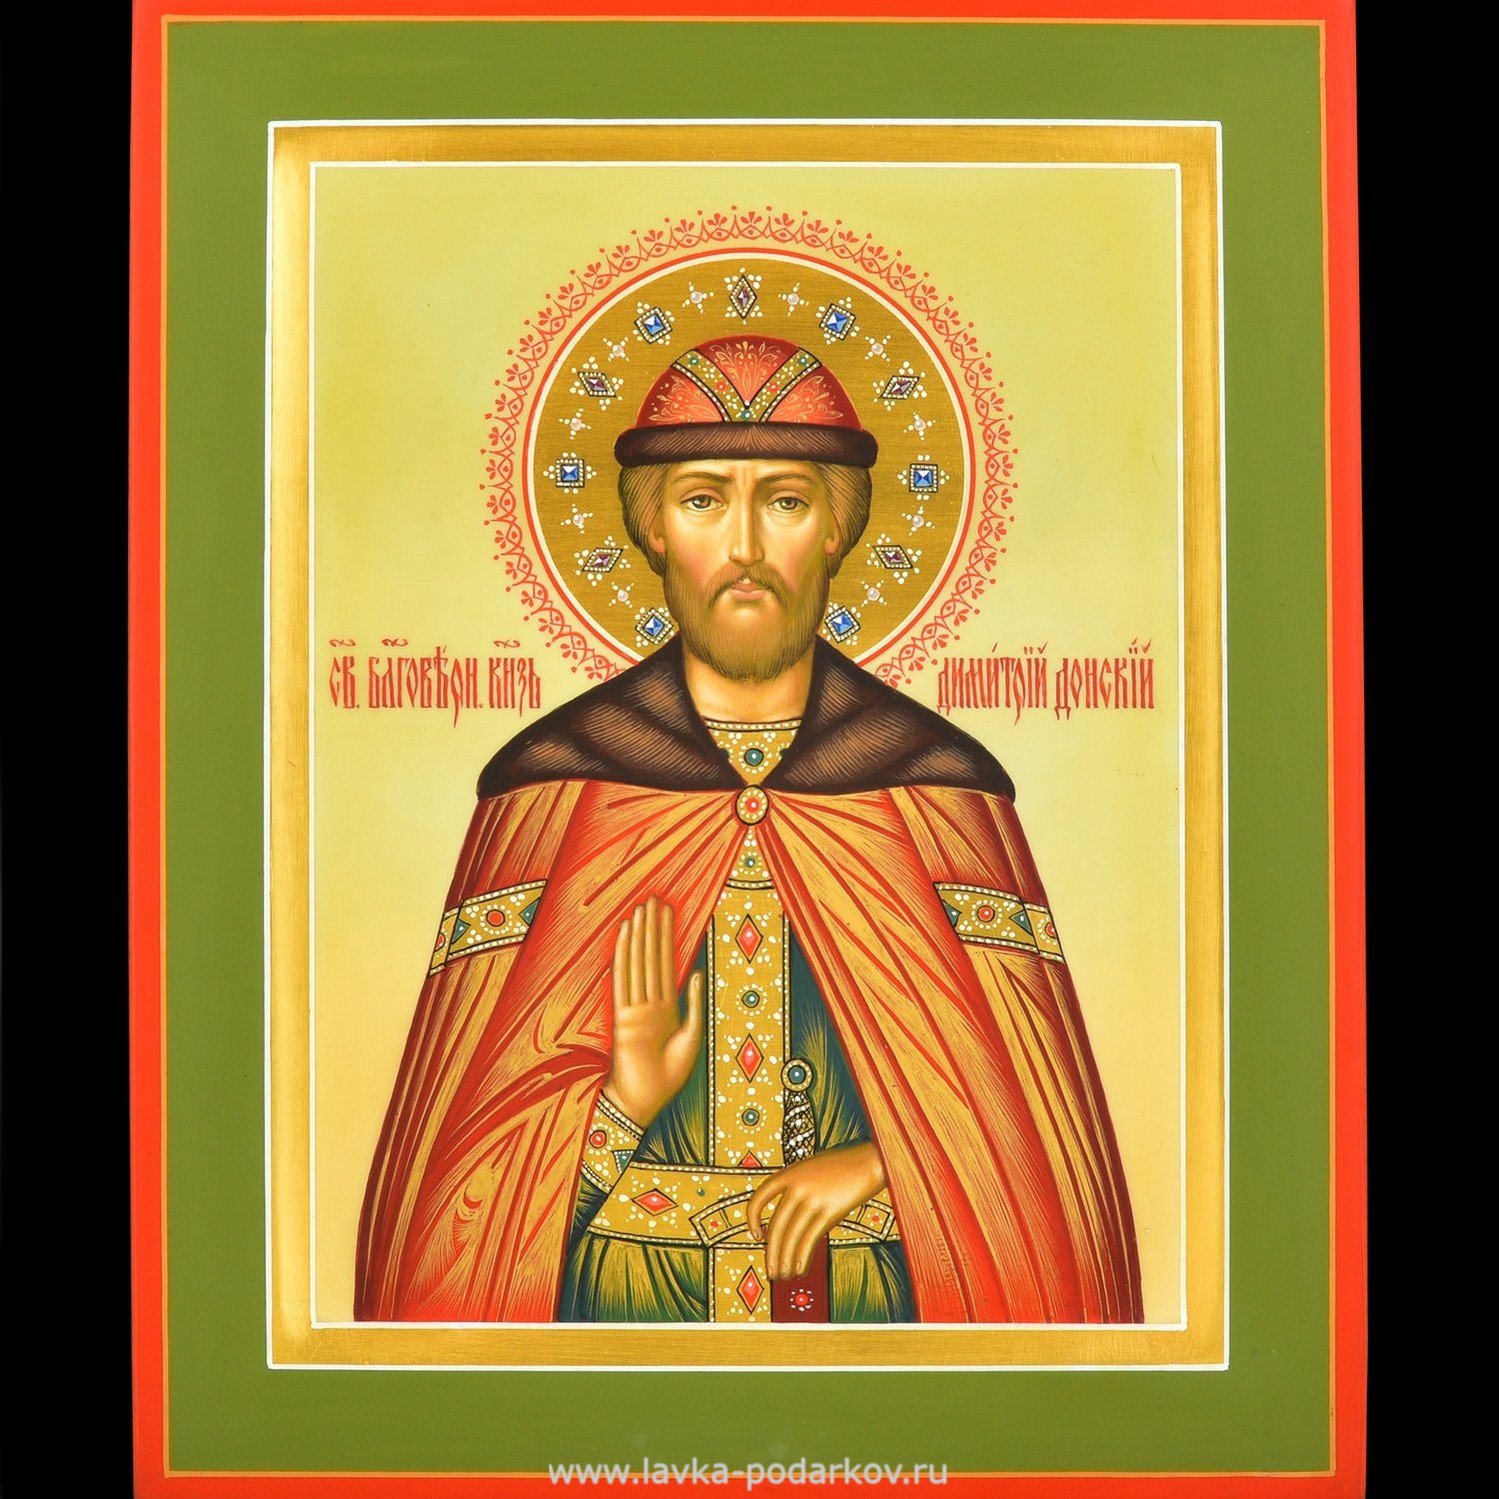 Какие есть святые дмитрии. Благоверный князь Донской икона.